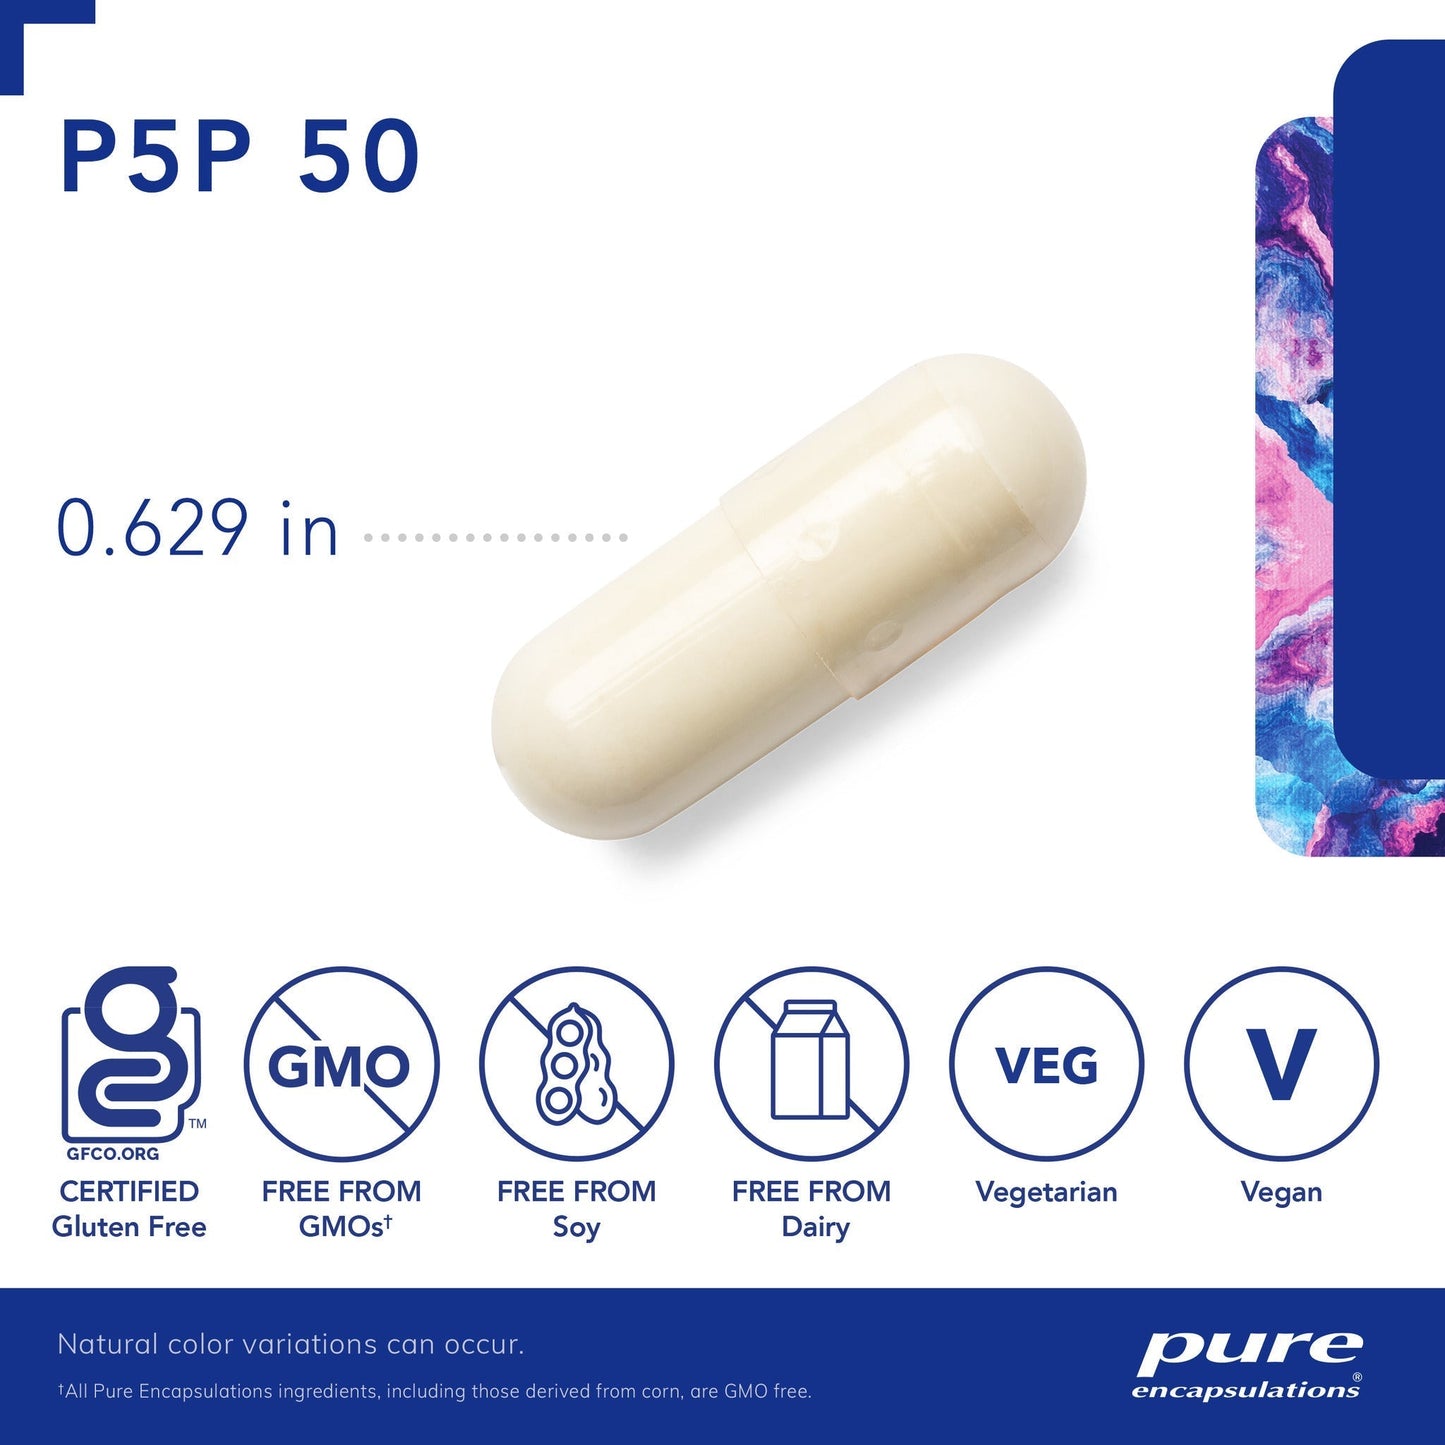 P5P 50